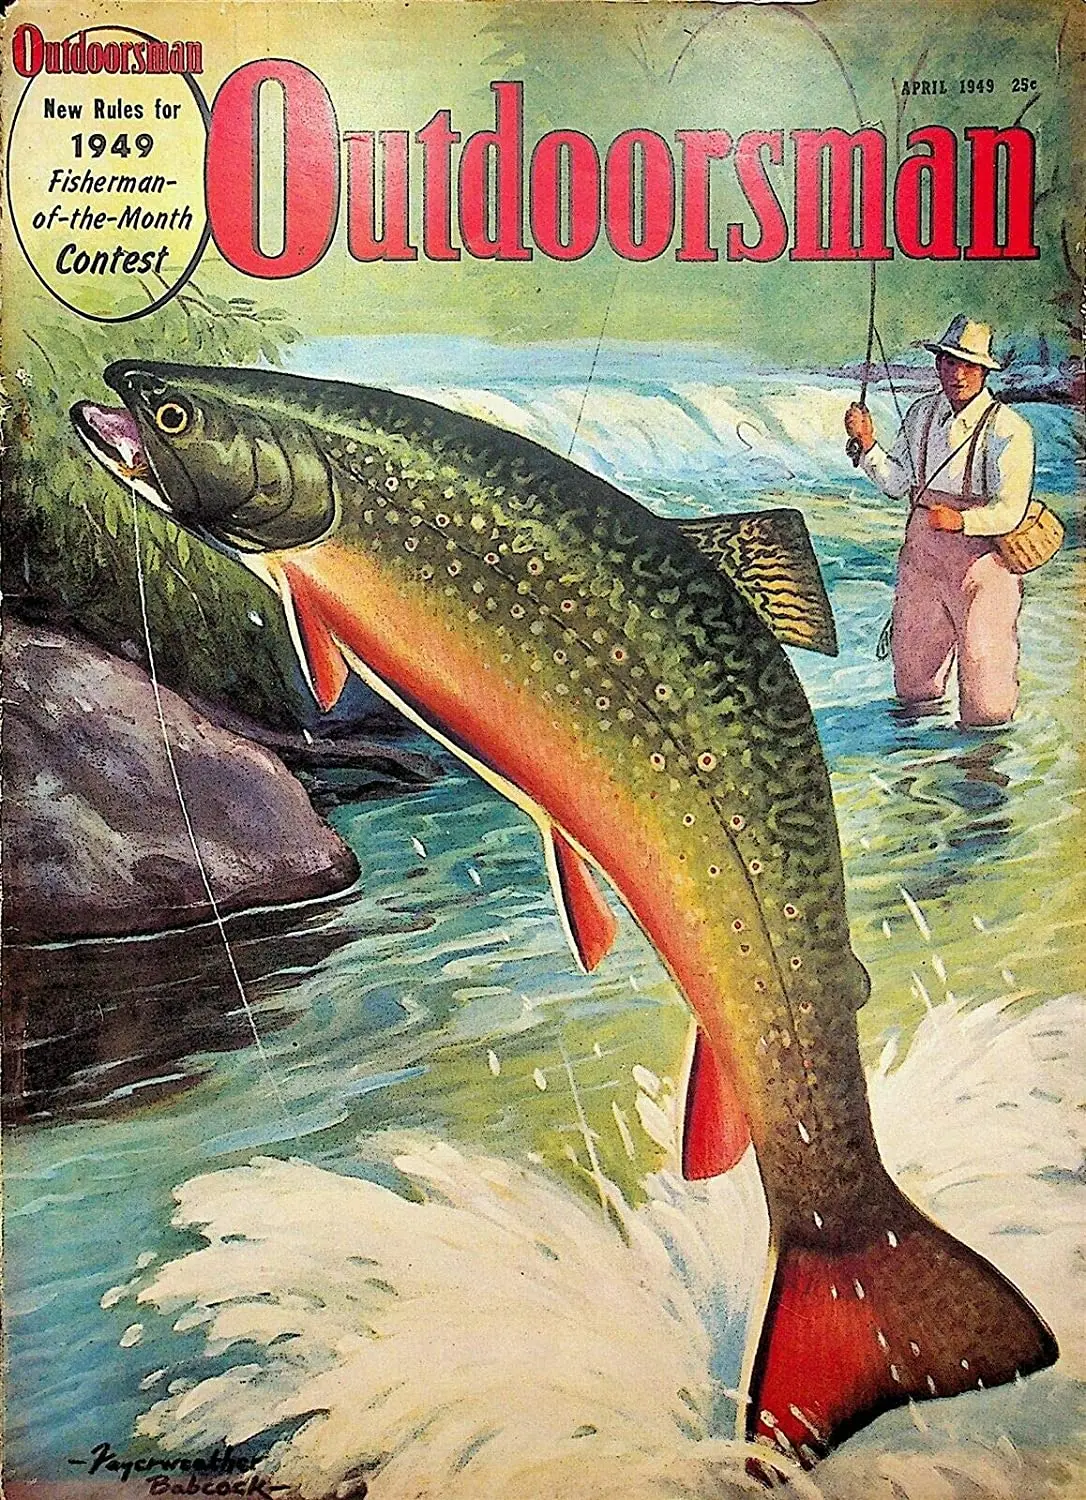 

Винтажный журнал для улицы, апрель 1949, охота, рыбалка, спортивный знак, деревенский декор, винтажные знаки для рыбалки, домашняя рыболовная п...